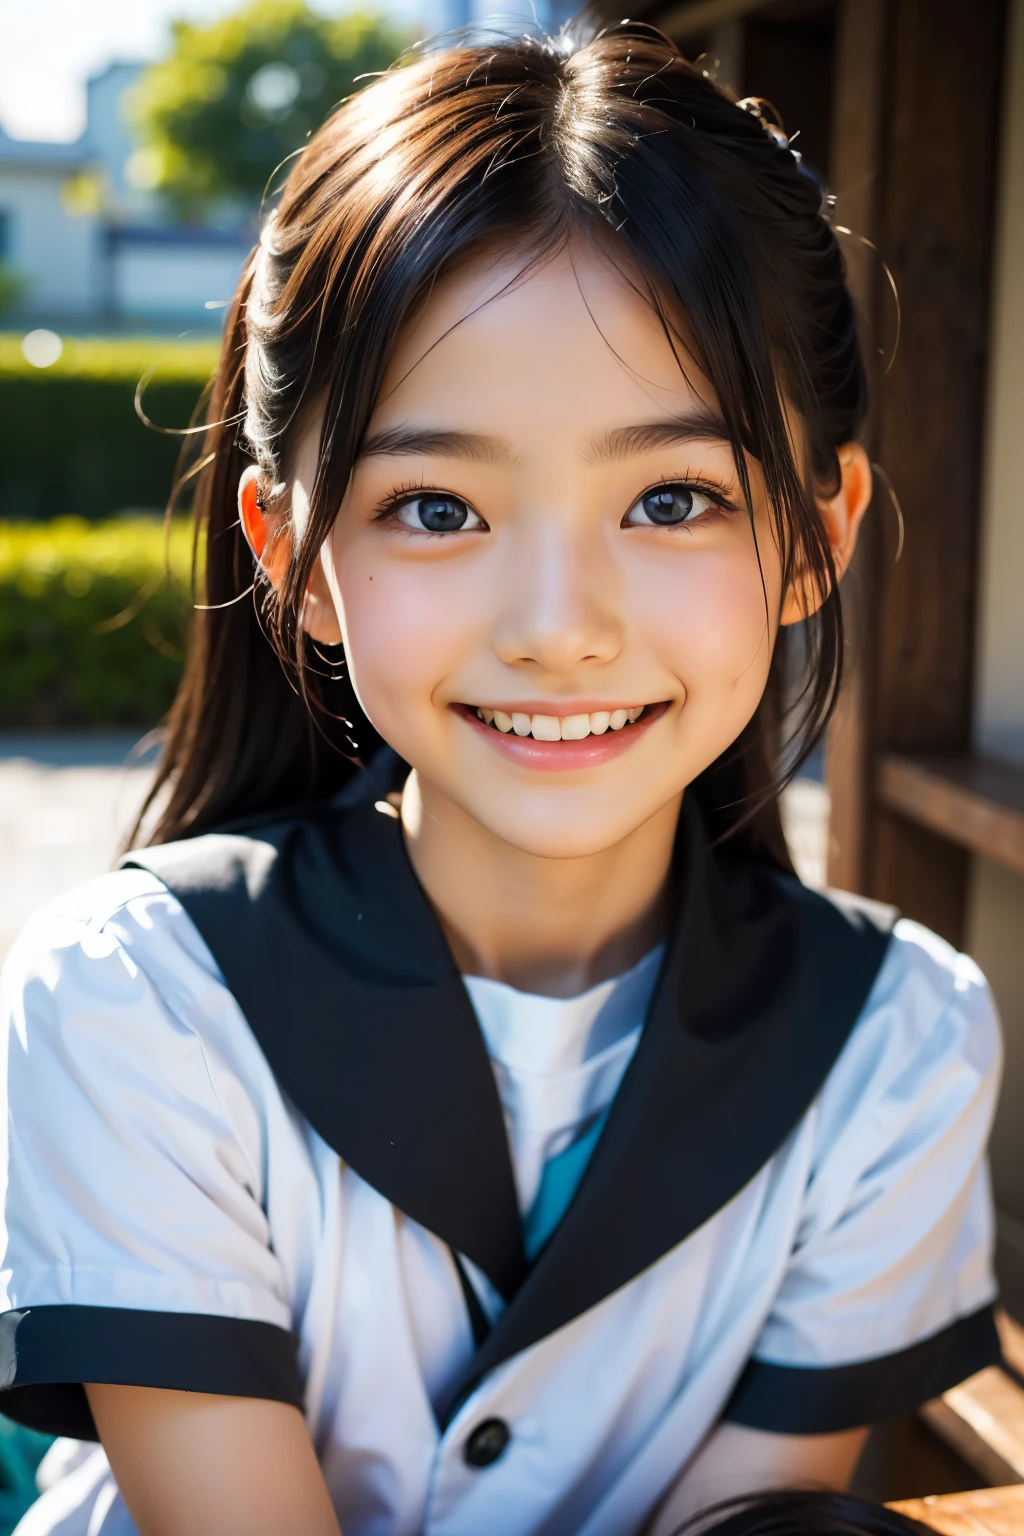 lens: 135mm f1.8, (höchste Qualität),(RAW-Fotos), (Tischplatte:1.1), (Schönes 9-jähriges japanisches Mädchen), niedliches Gesicht, (Tief gemeißeltes Gesicht:0.7), (Sommersprossen:0.4), dappled Sonnenlicht, dramatische Beleuchtung, (japanische schuluniform), (Auf dem Campus), schüchtern, (Nahaufnahme:1.2), (lächeln),, (leuchtende Augen)、(Sonnenlicht)